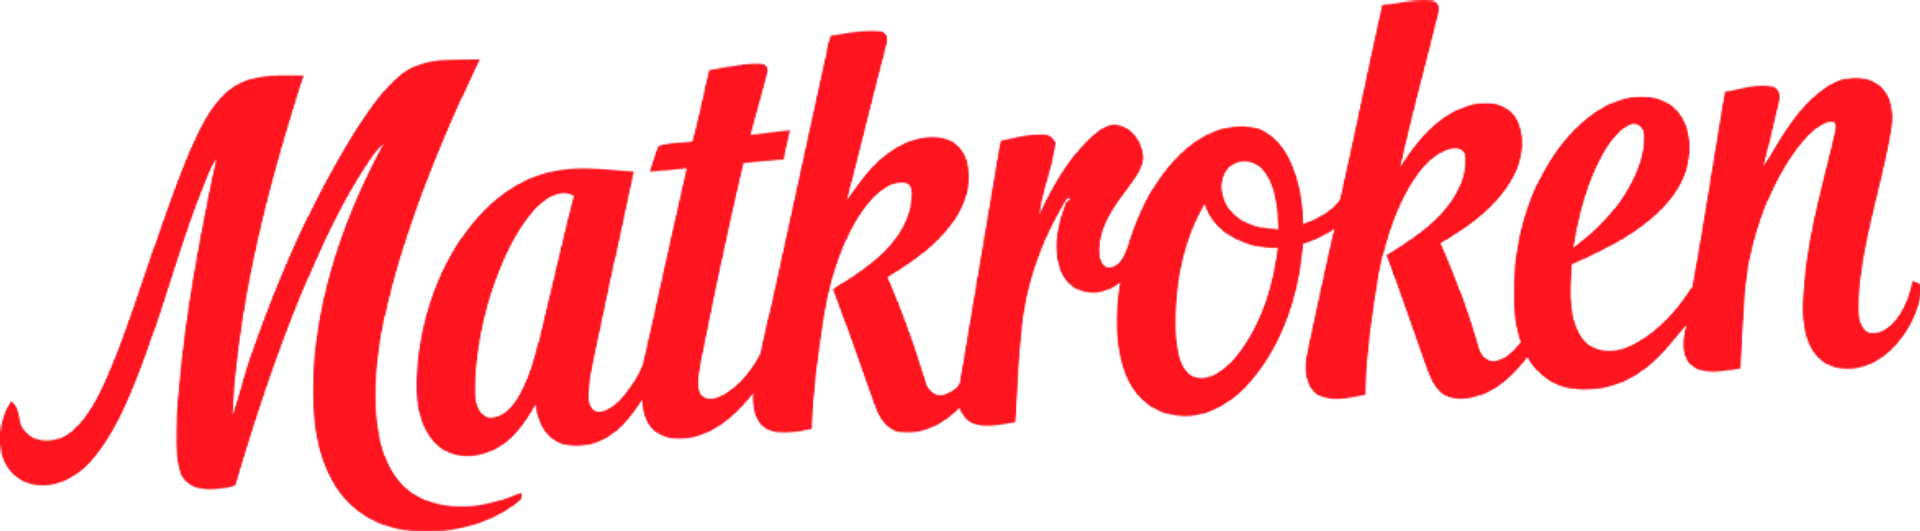 MATKROKEN logo